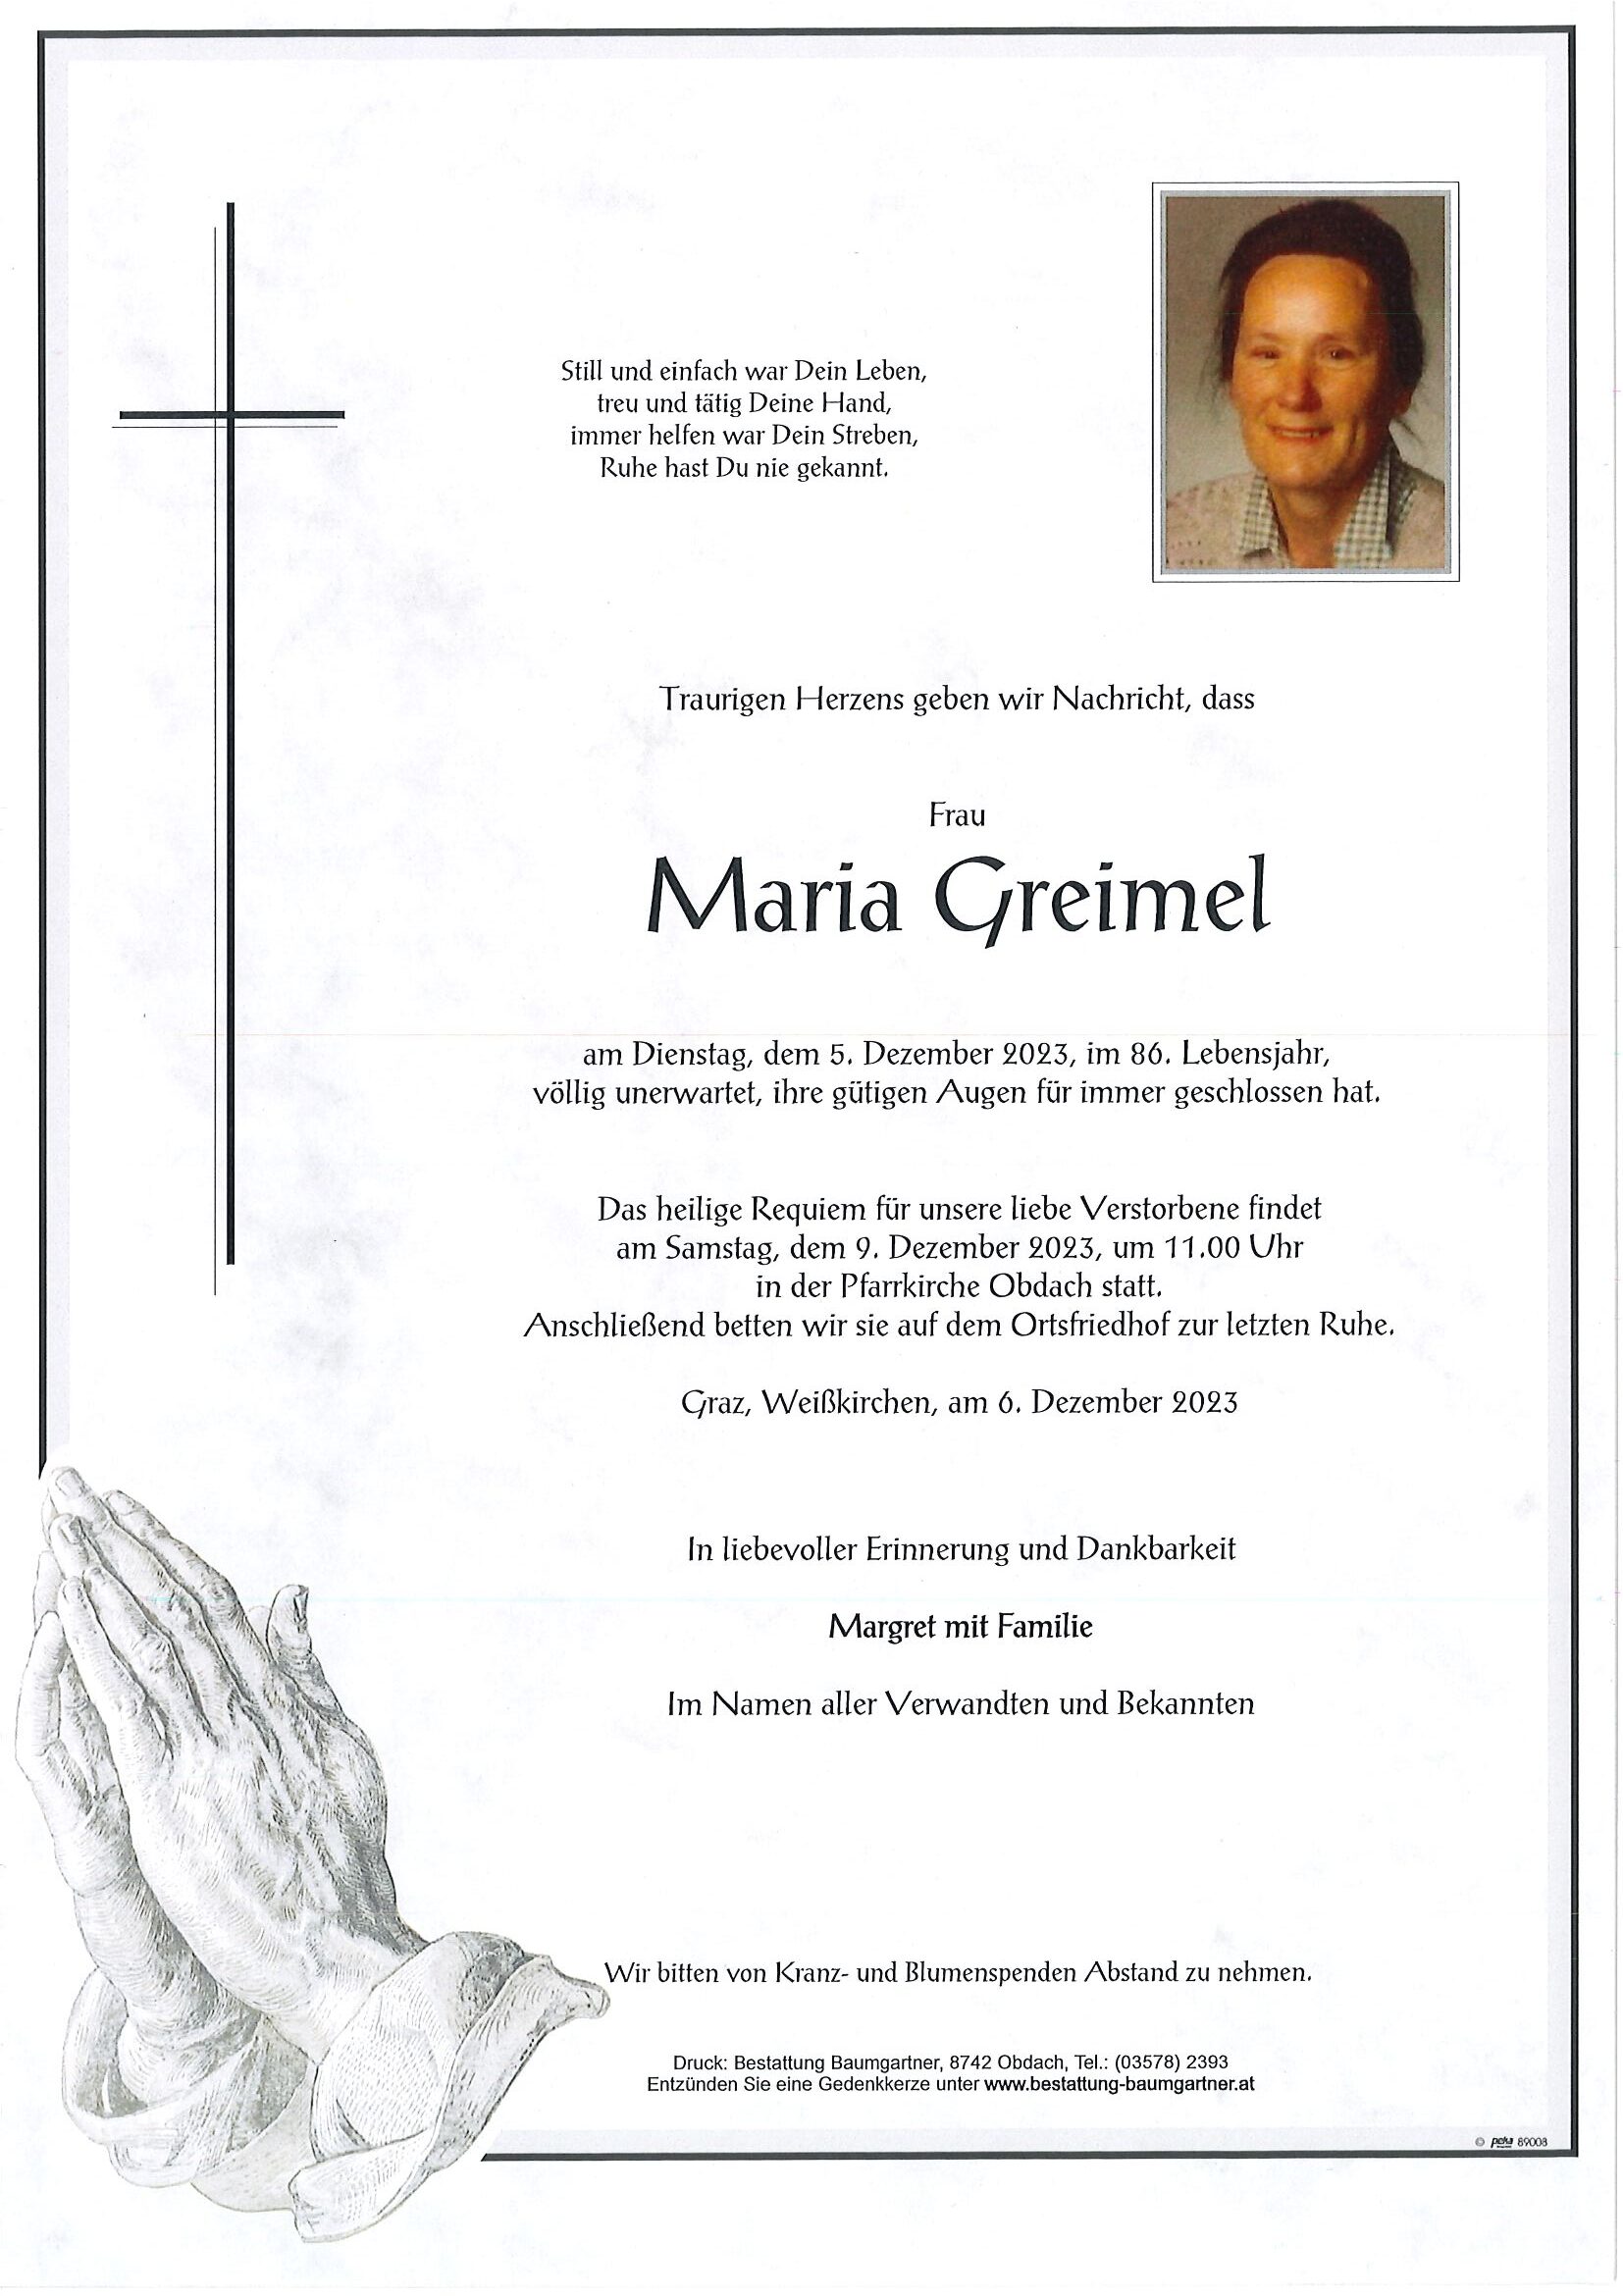 Traueranzeige Maria Greimel